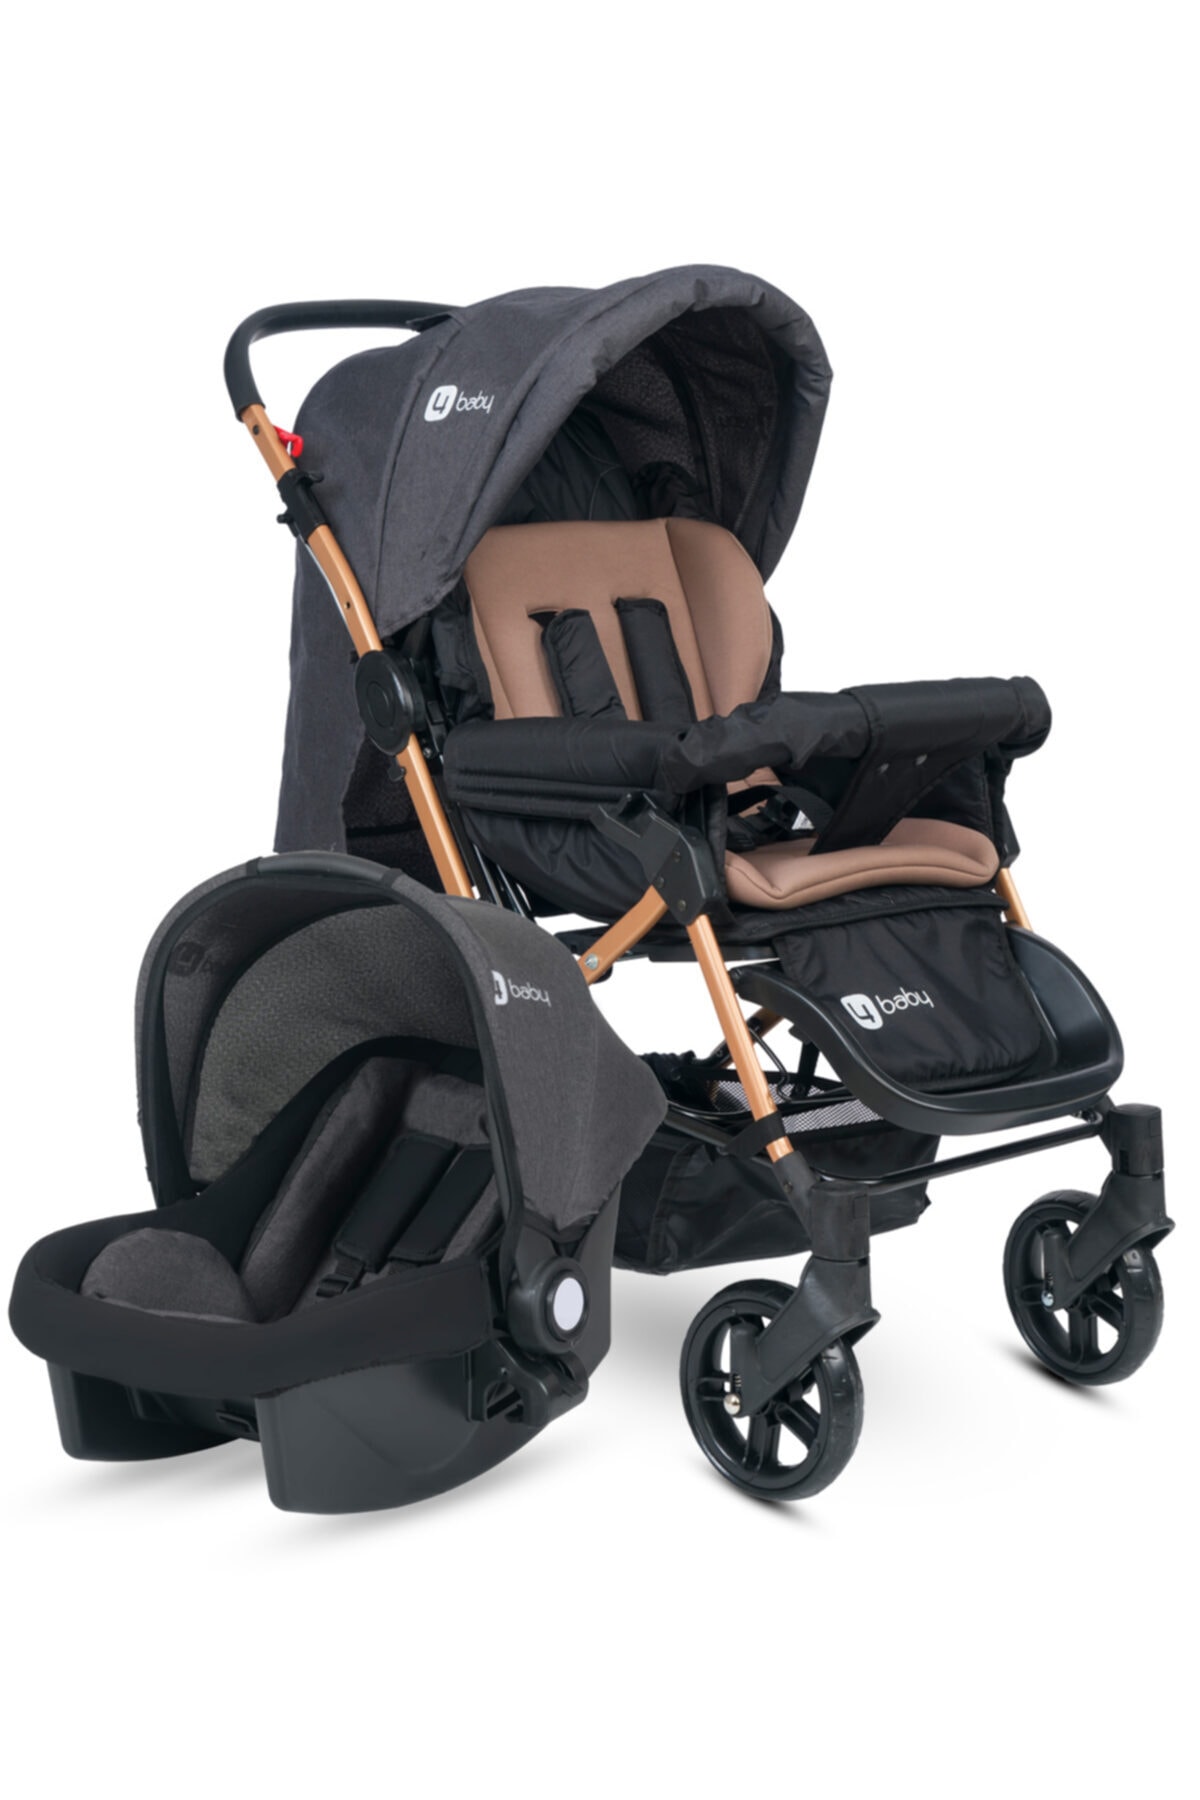 4 Baby Olympus Gold-Antrasit Travel Sistem Bebek Arabası Seyahat Sistem Çift Yön Puset Taşıma Koltuğu